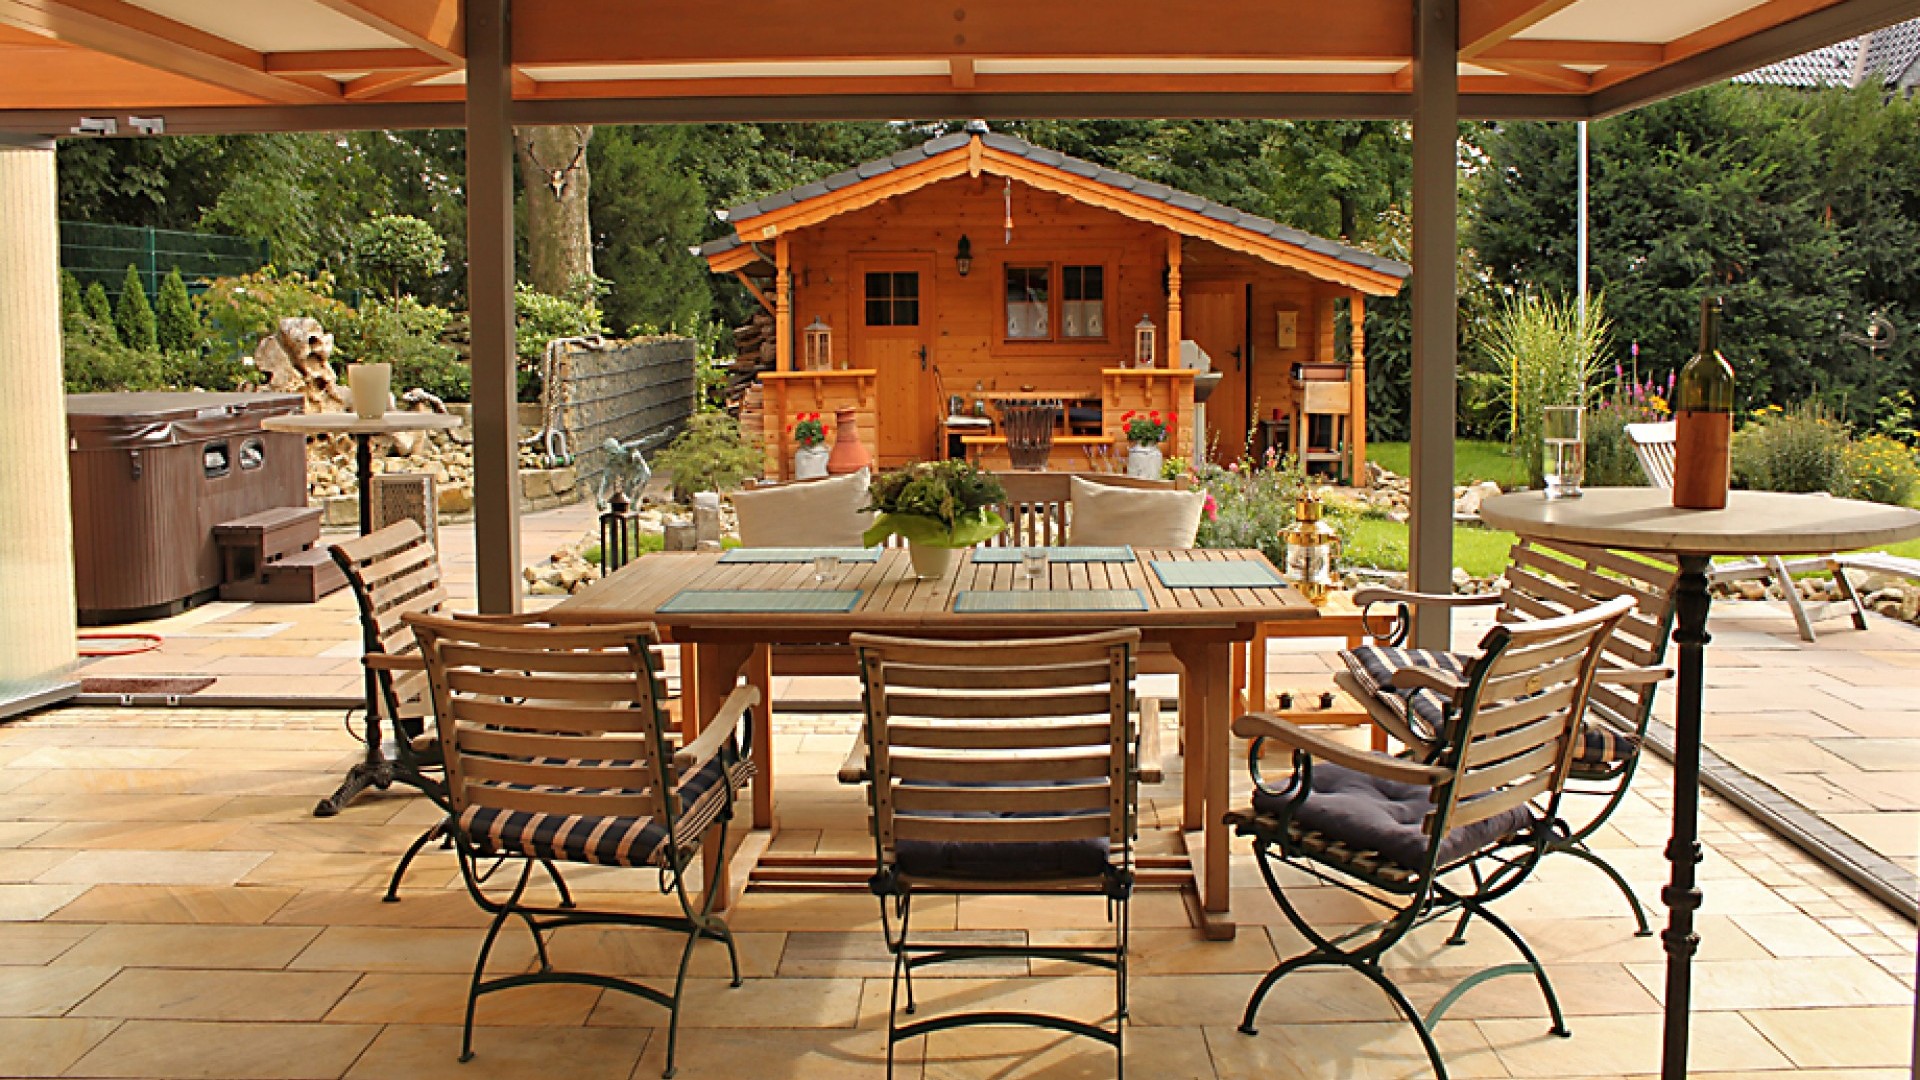 Holzdach mit Tischen und Stühlen darunter